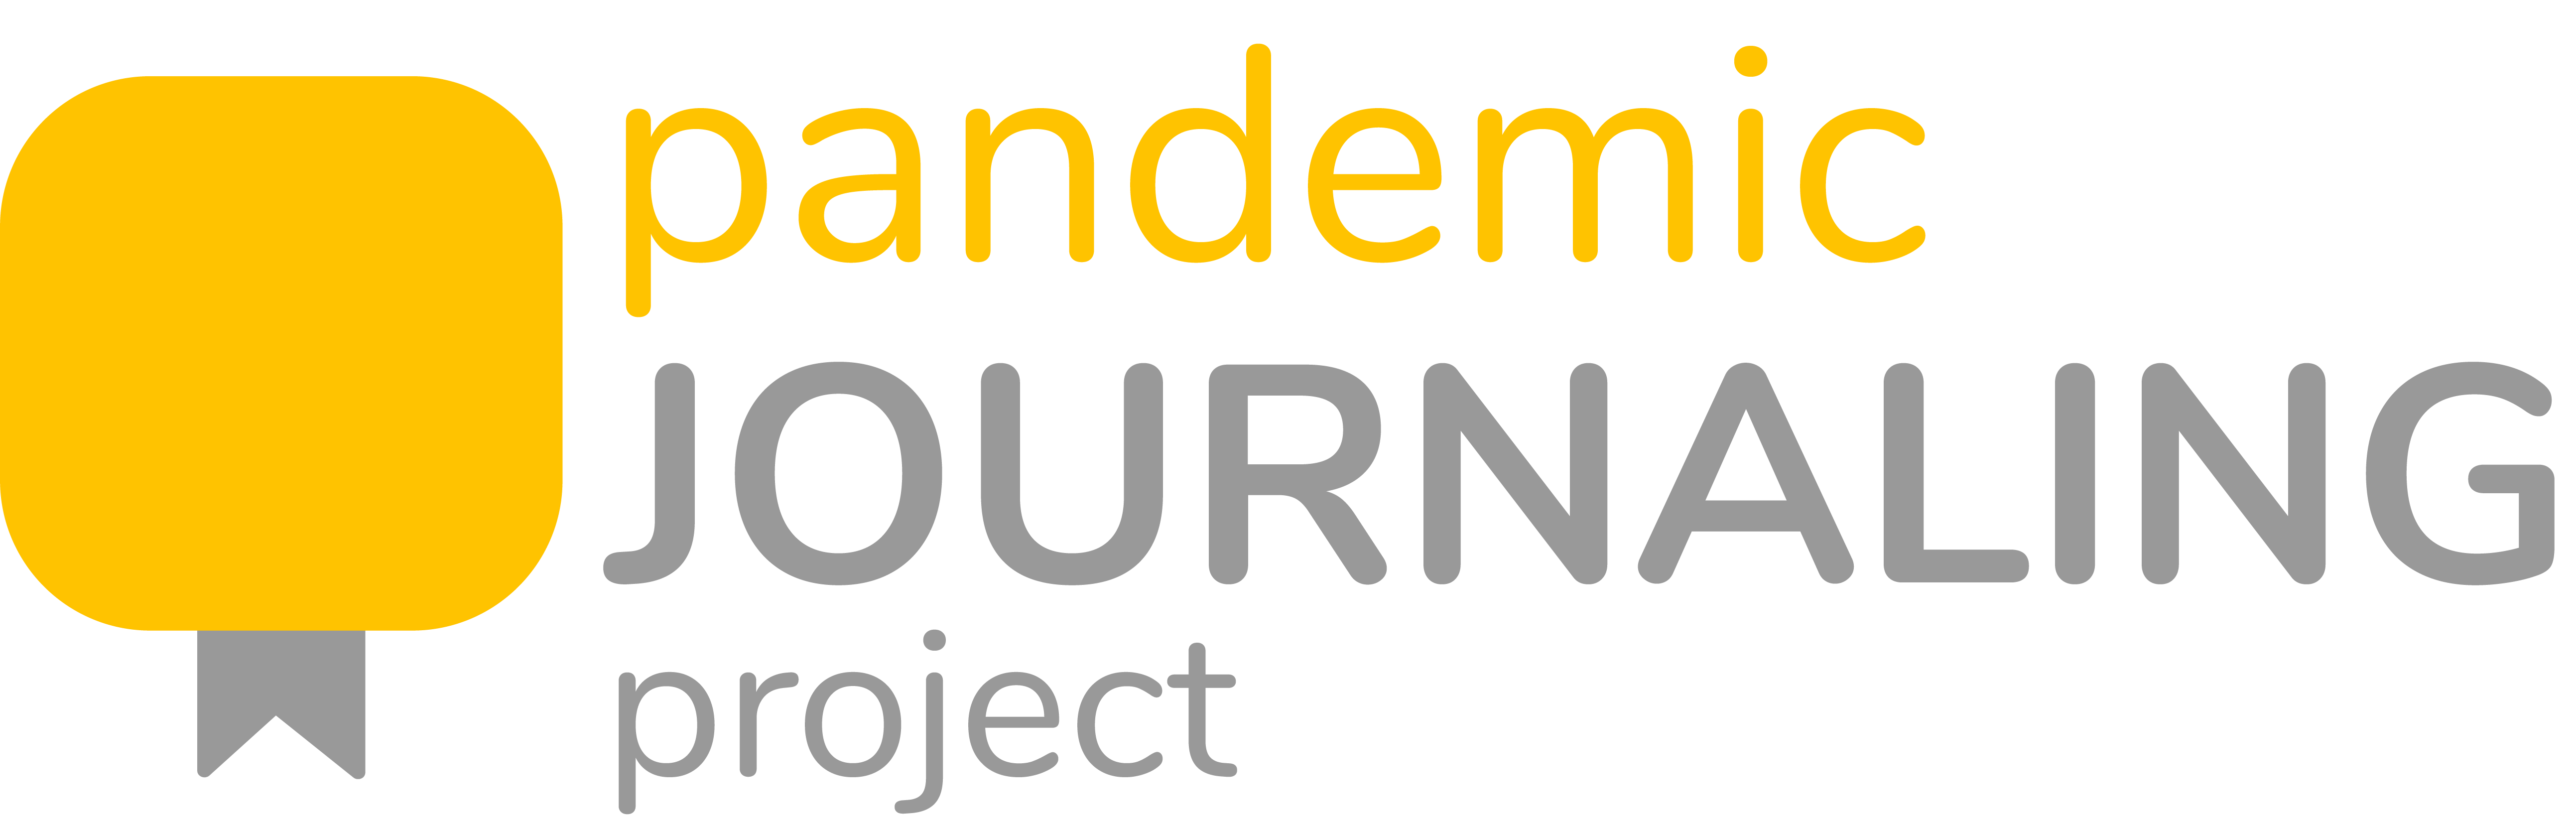 pandemic journal logo - pjp_Logo_Draft2_v9